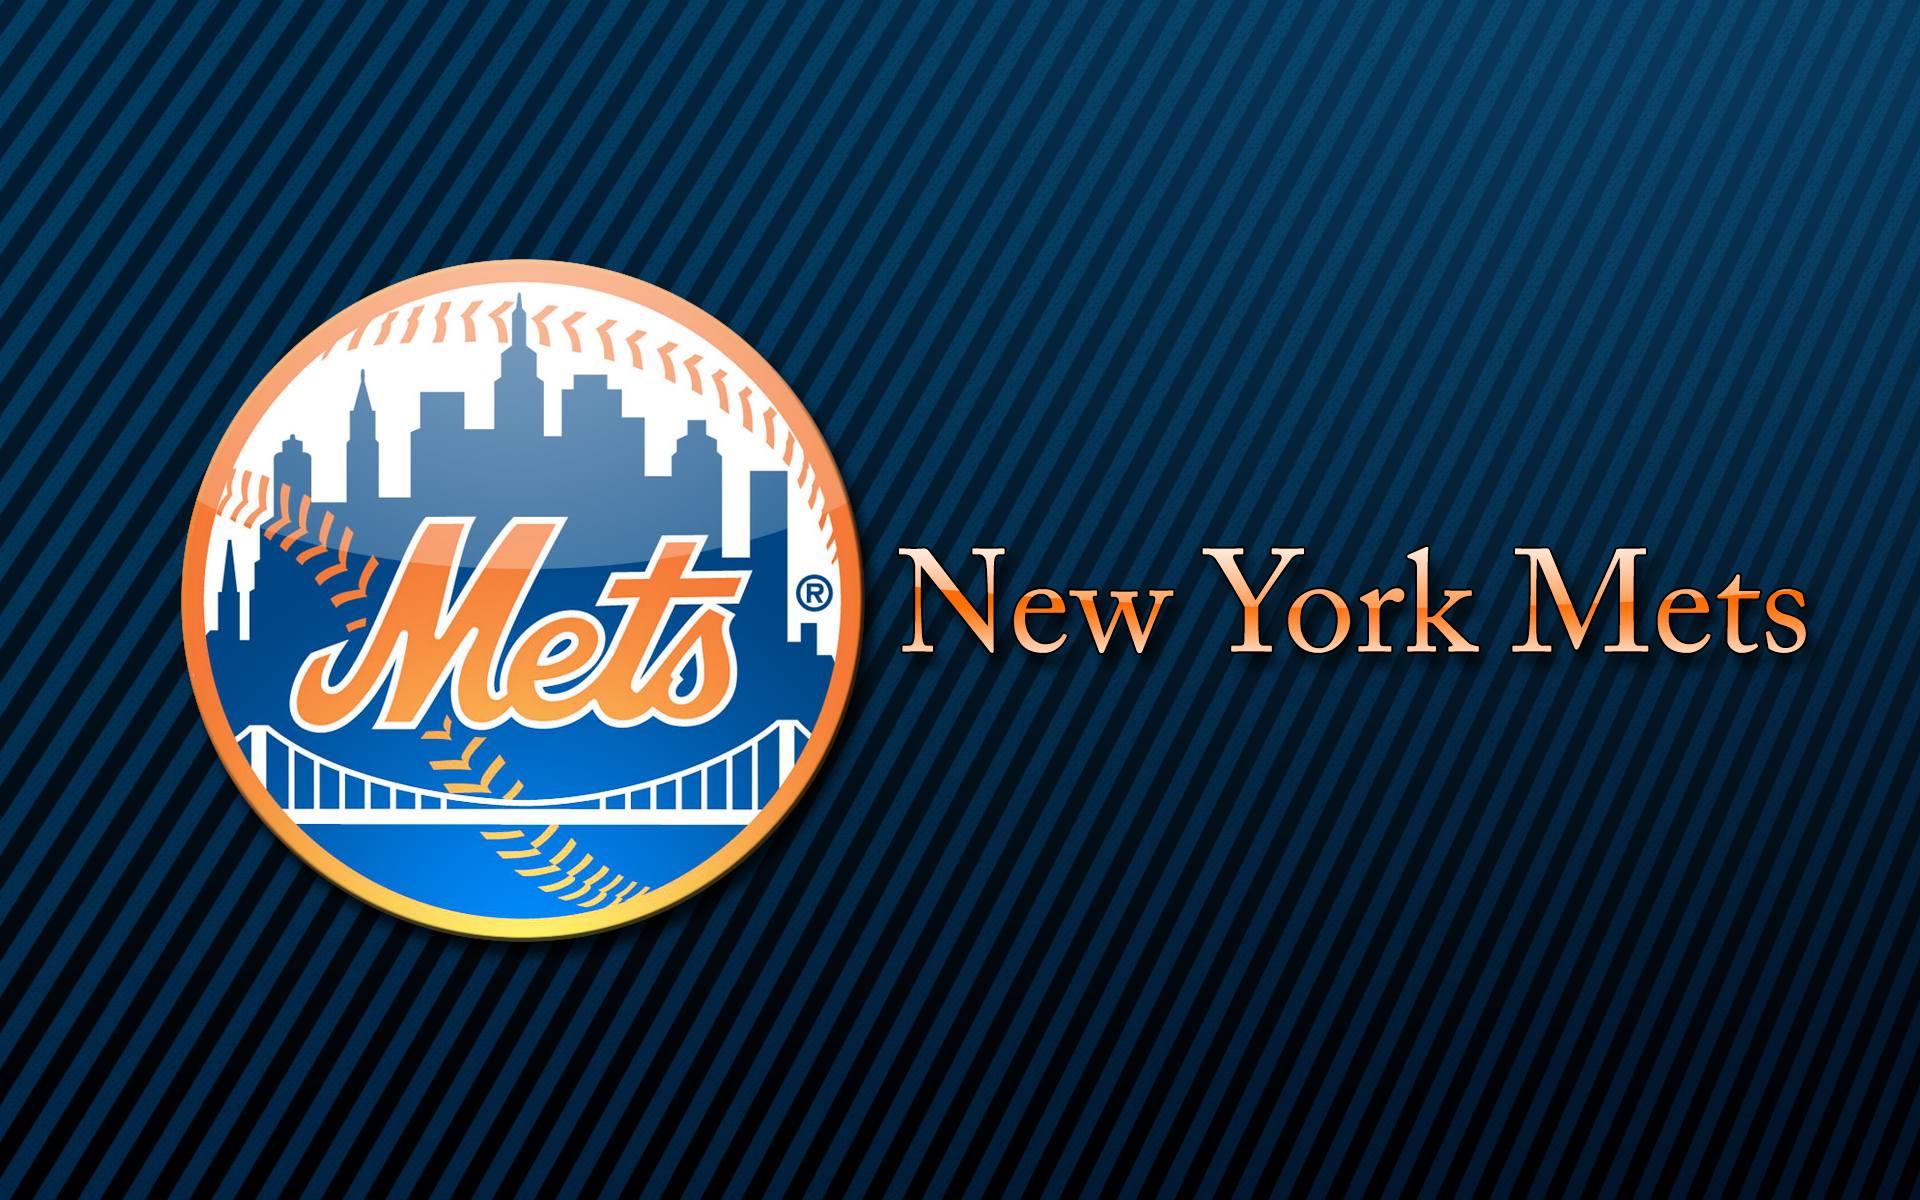  New York Mets desktop image New York Mets wallpapers 1920x1200